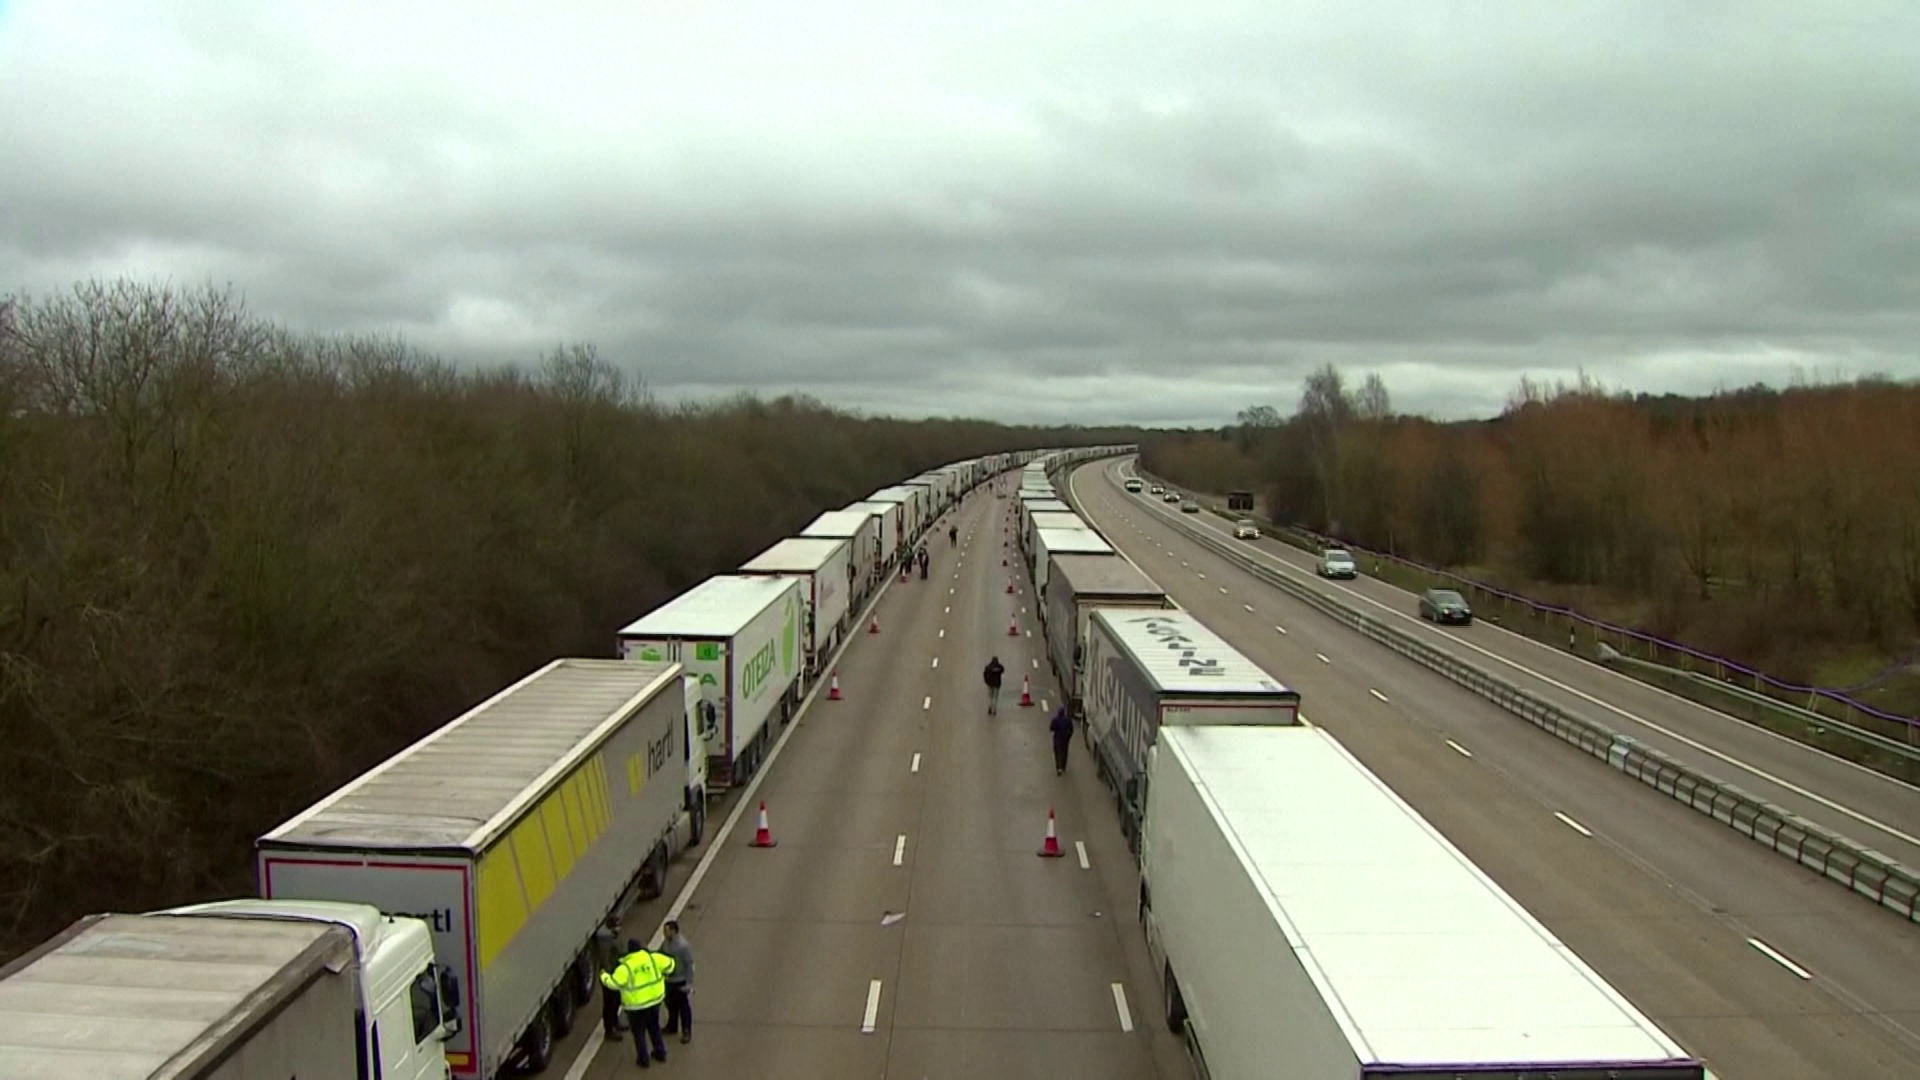 A teherfuvarozók hosszú várakozási idővel számolnak a brit határon